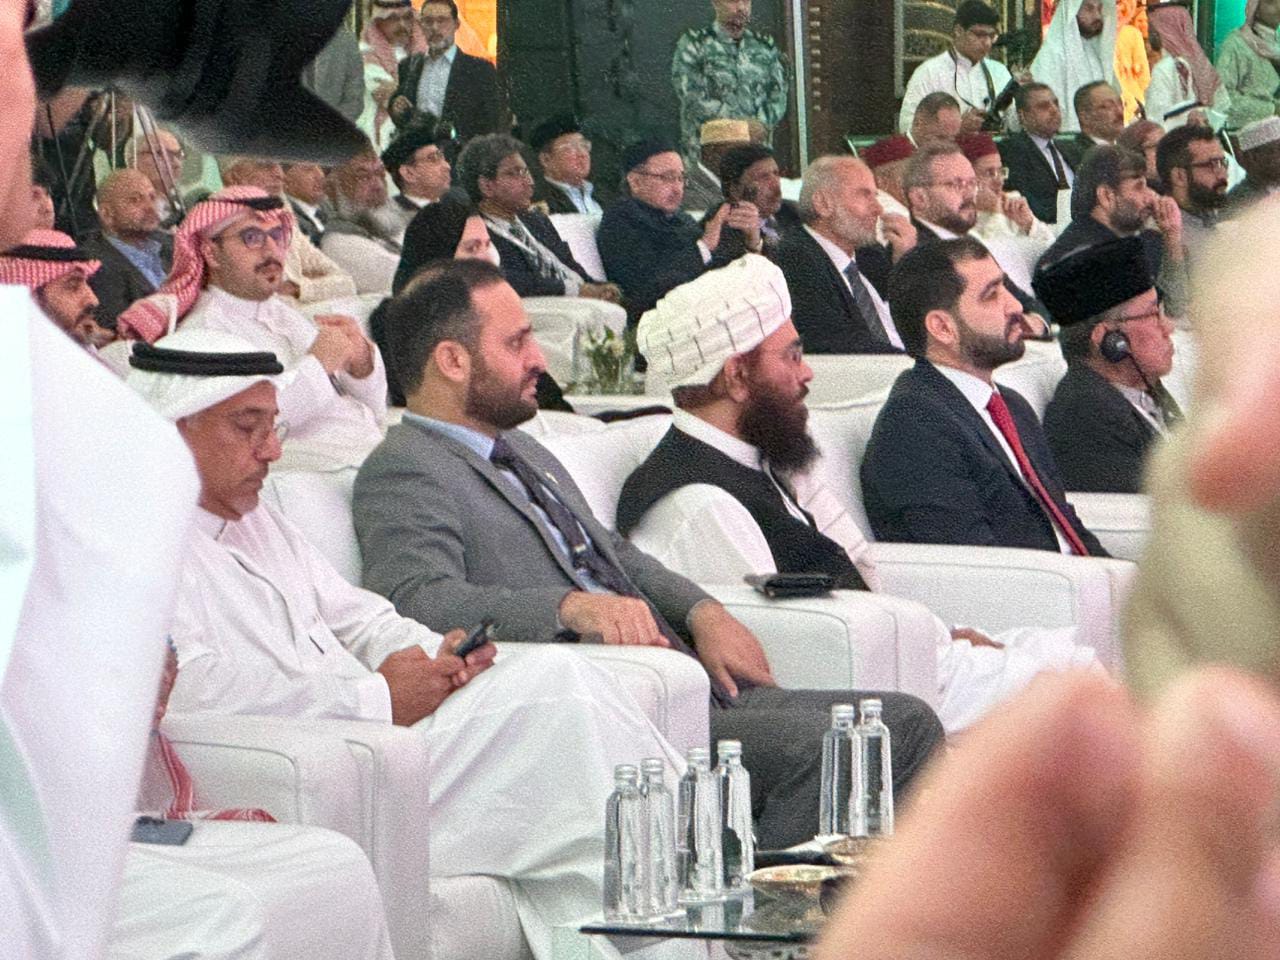 د ارشاد، حج او اوقافو وزیر د سعودي عربستان په جدې ښار کې د حج په ستر کنفرانس کې ګډون وکړ